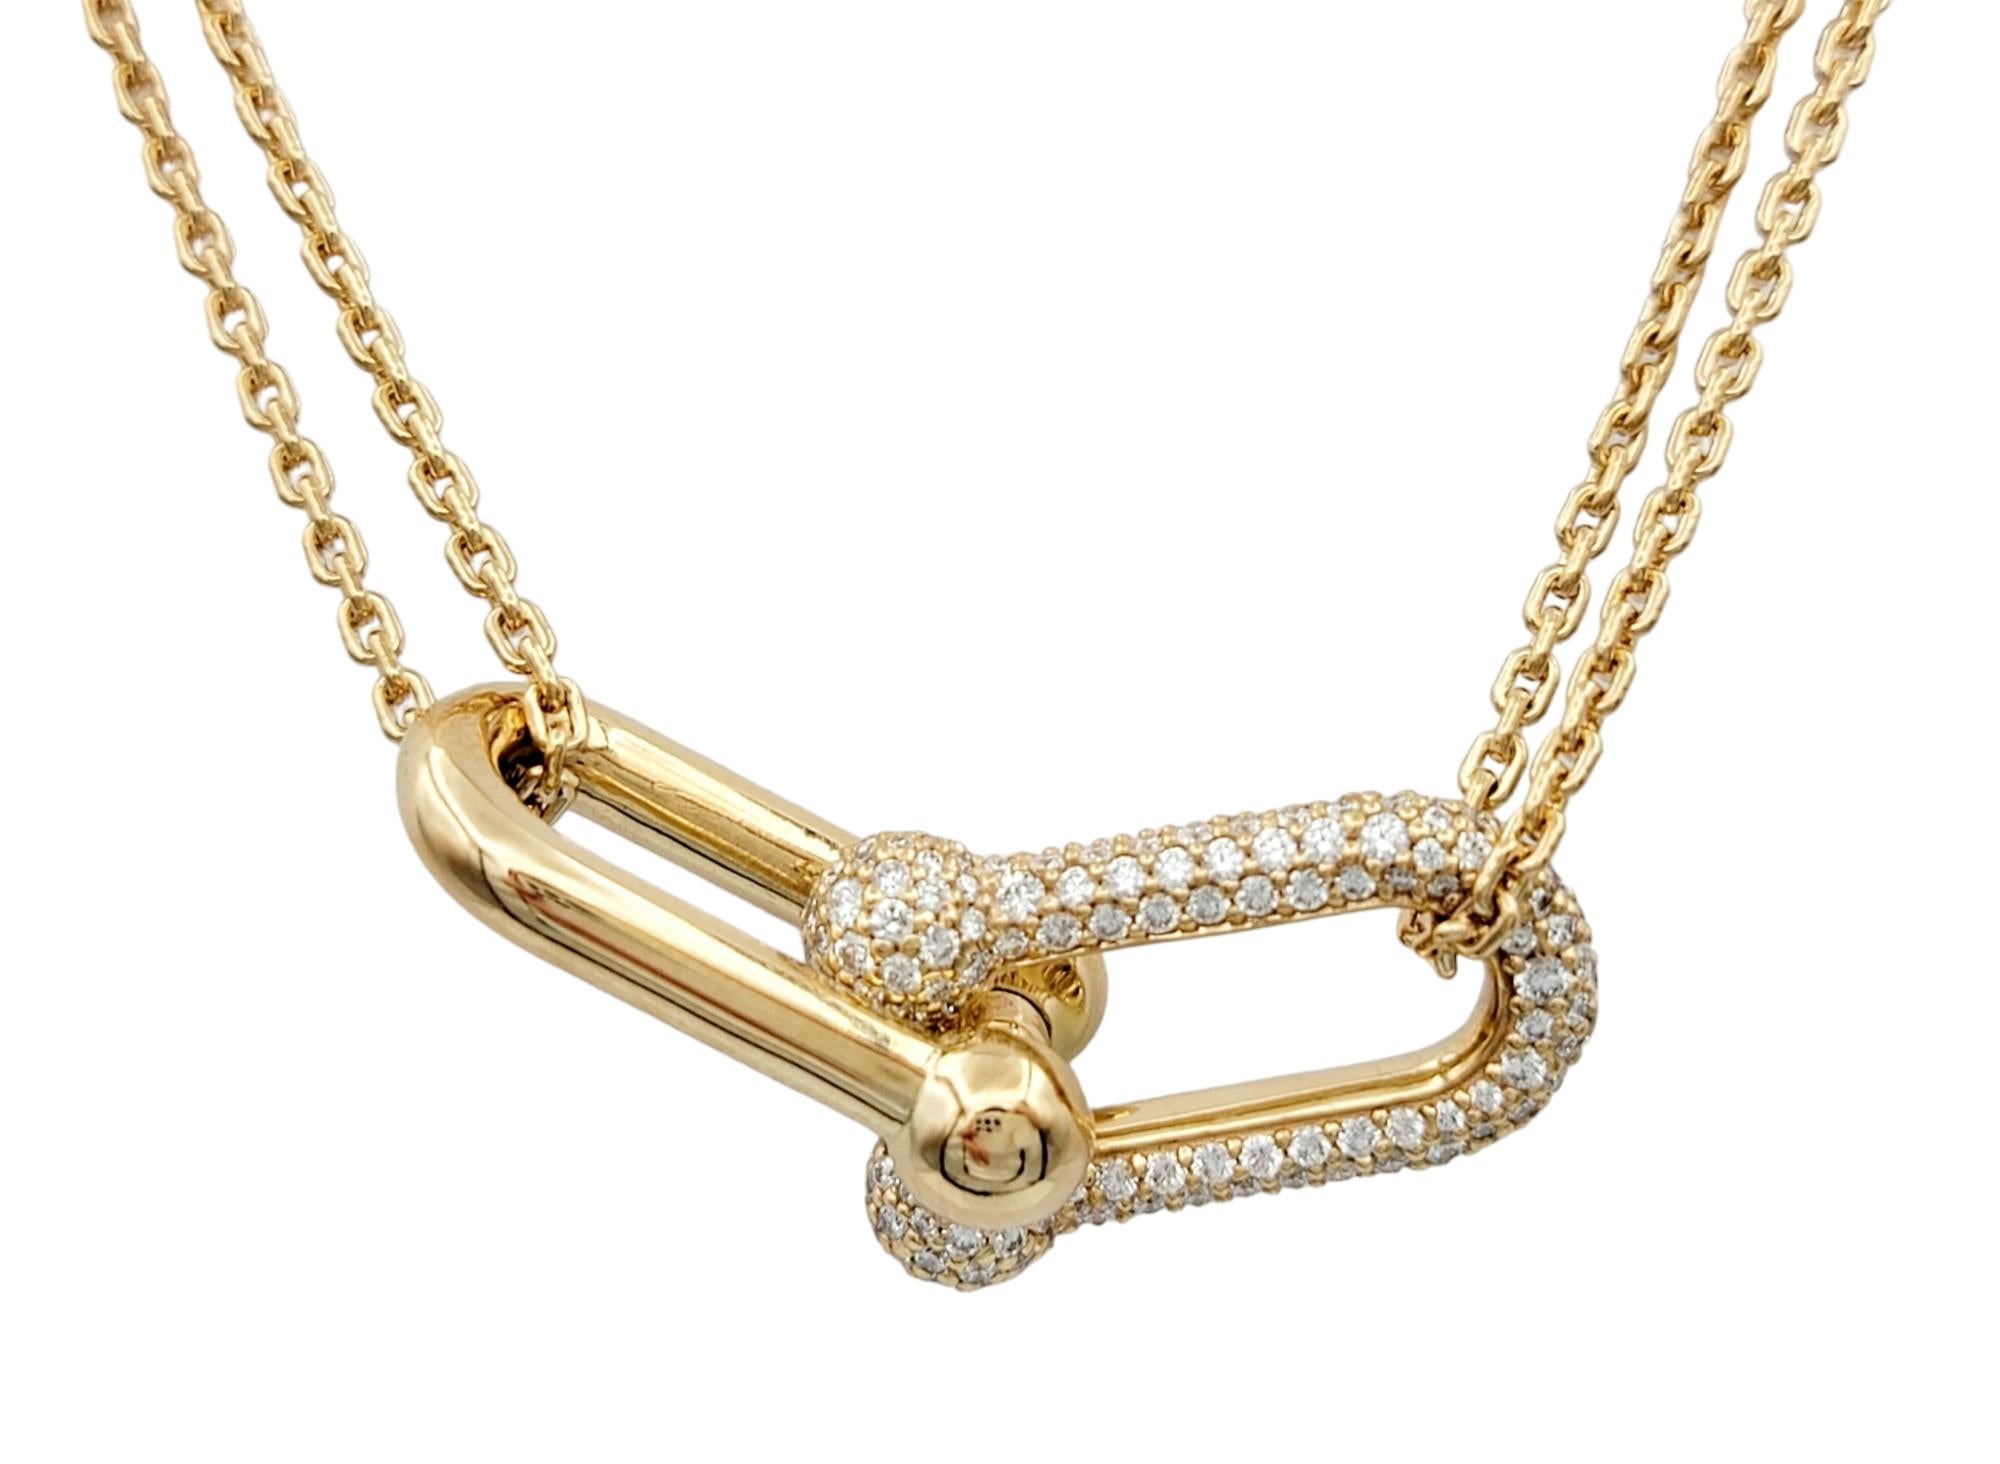 La collection Tiffany & Co. HardWear Collectional dégage une allure captivante avec cet incroyable collier en or et diamants. Réalisé en or rose lustré 18 carats, ce collier présente un pendentif à double maillon distinctif suspendu à une chaîne à